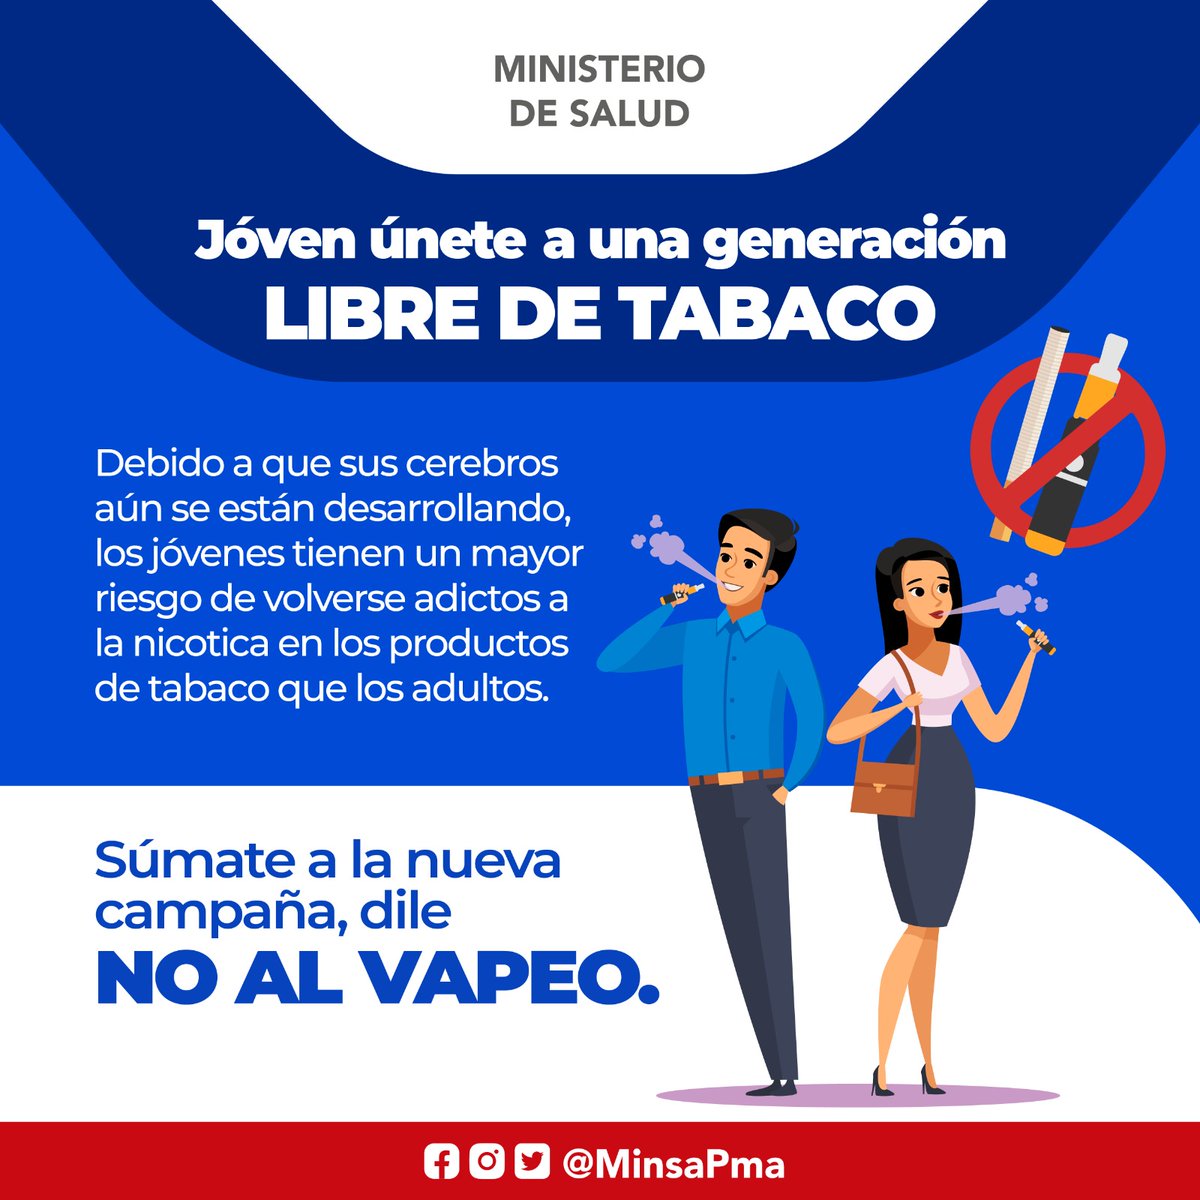 En Panamá está prohibida la comercialización de los cigarrillos electrónicos y similares, por ser nocivos y perjudiciales a la salud de la población.